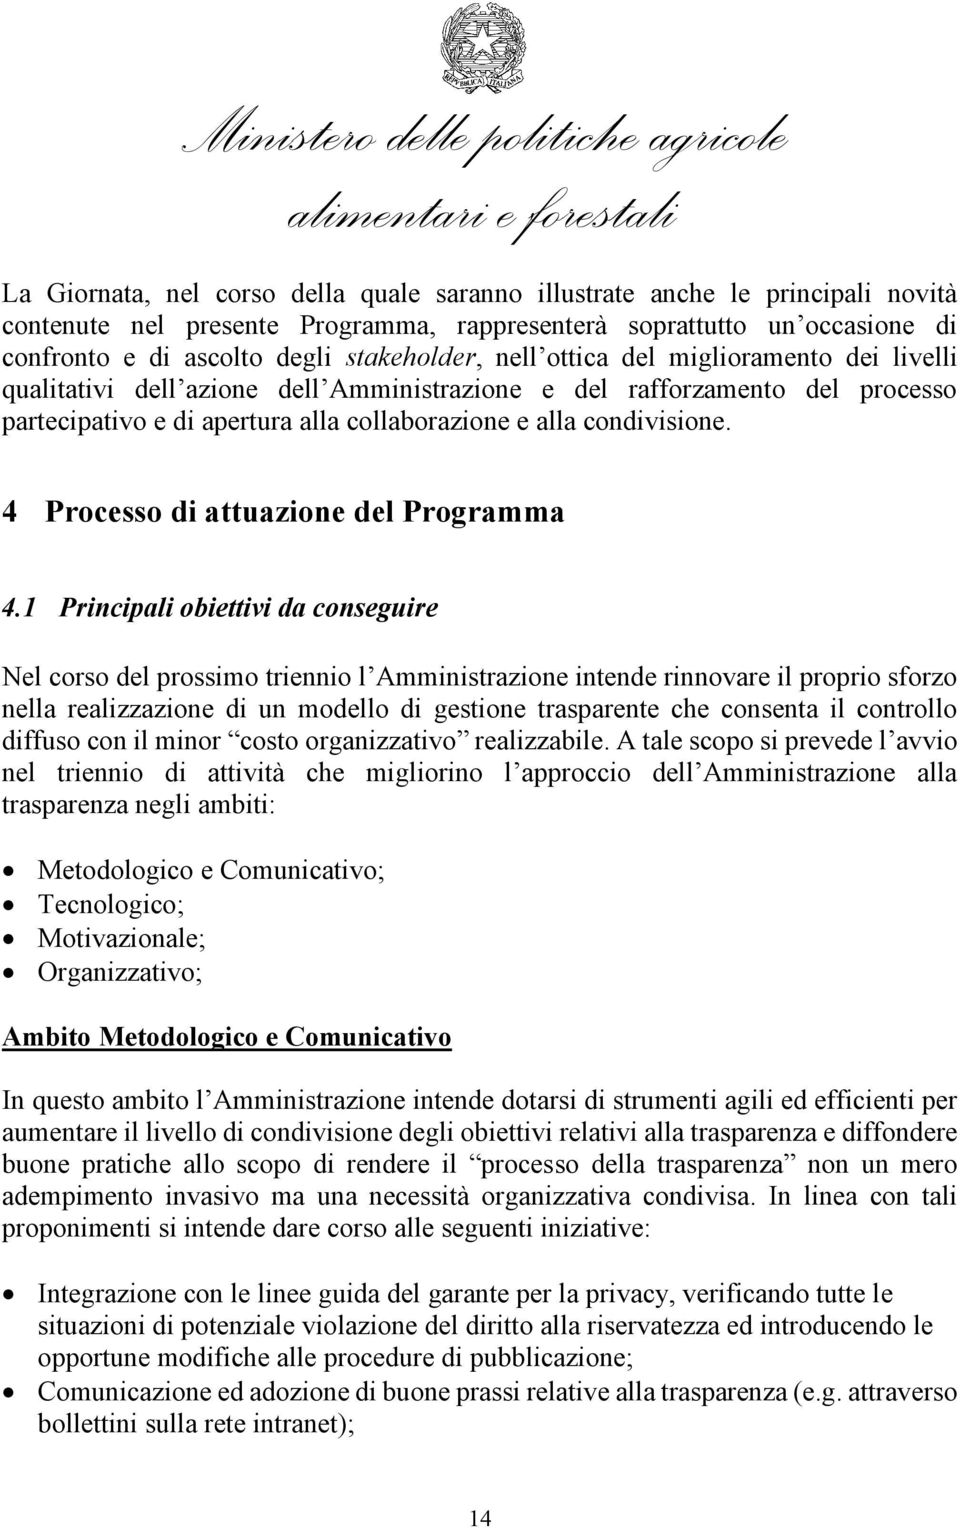 4 Processo di attuazione del Programma 4.